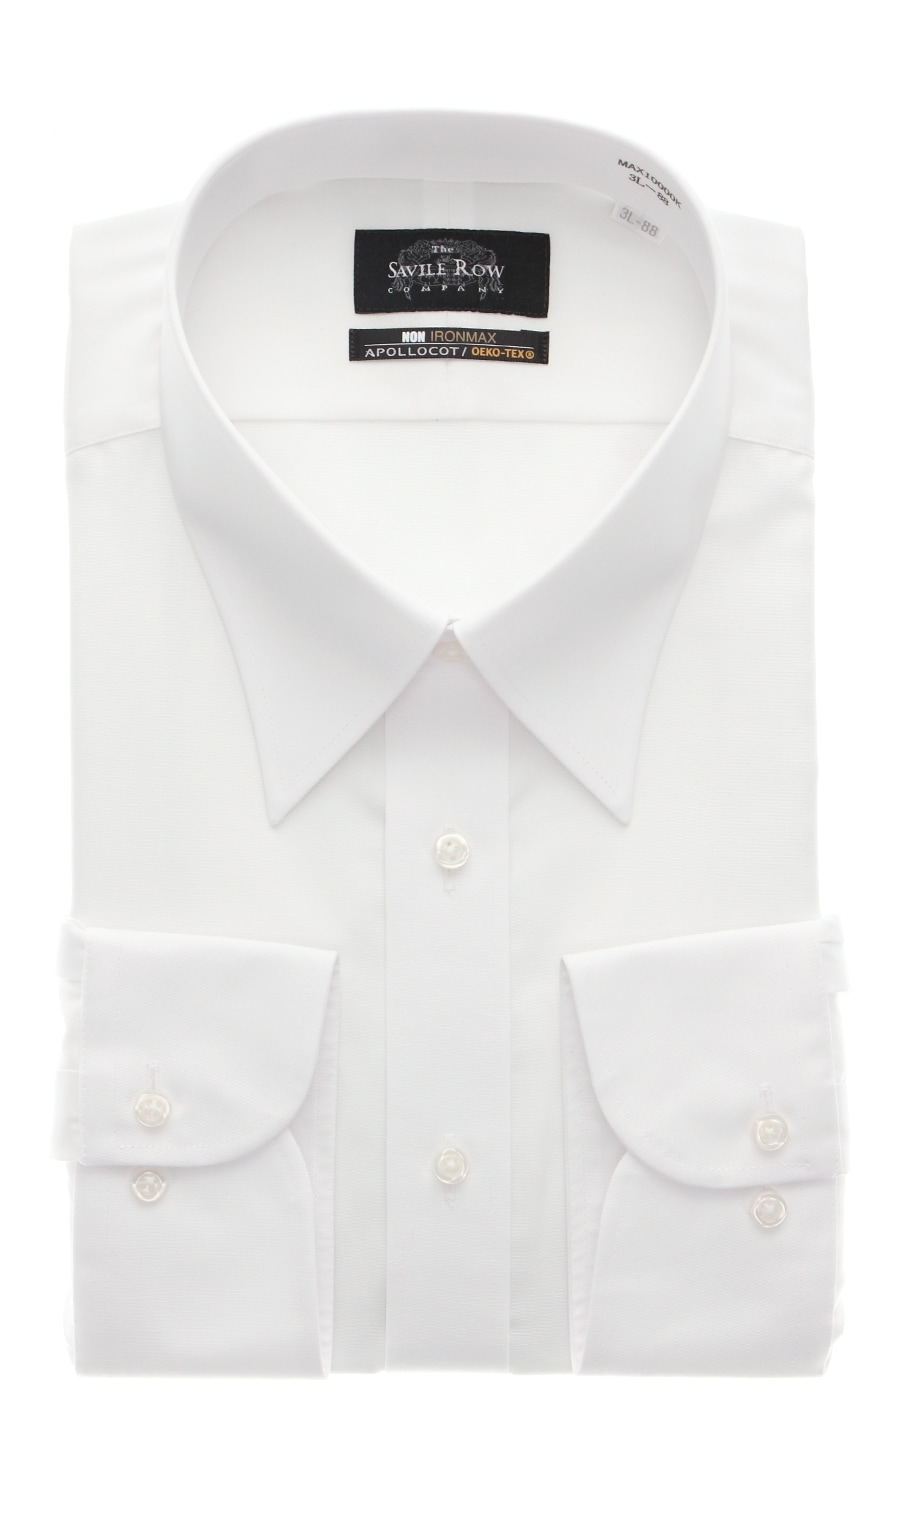 レギュラーカラースタンダードワイシャツ キング トール Non Ironmax Maxk Savile Row 紳士服 スーツ販売数世界no 1 洋服の青山 公式通販